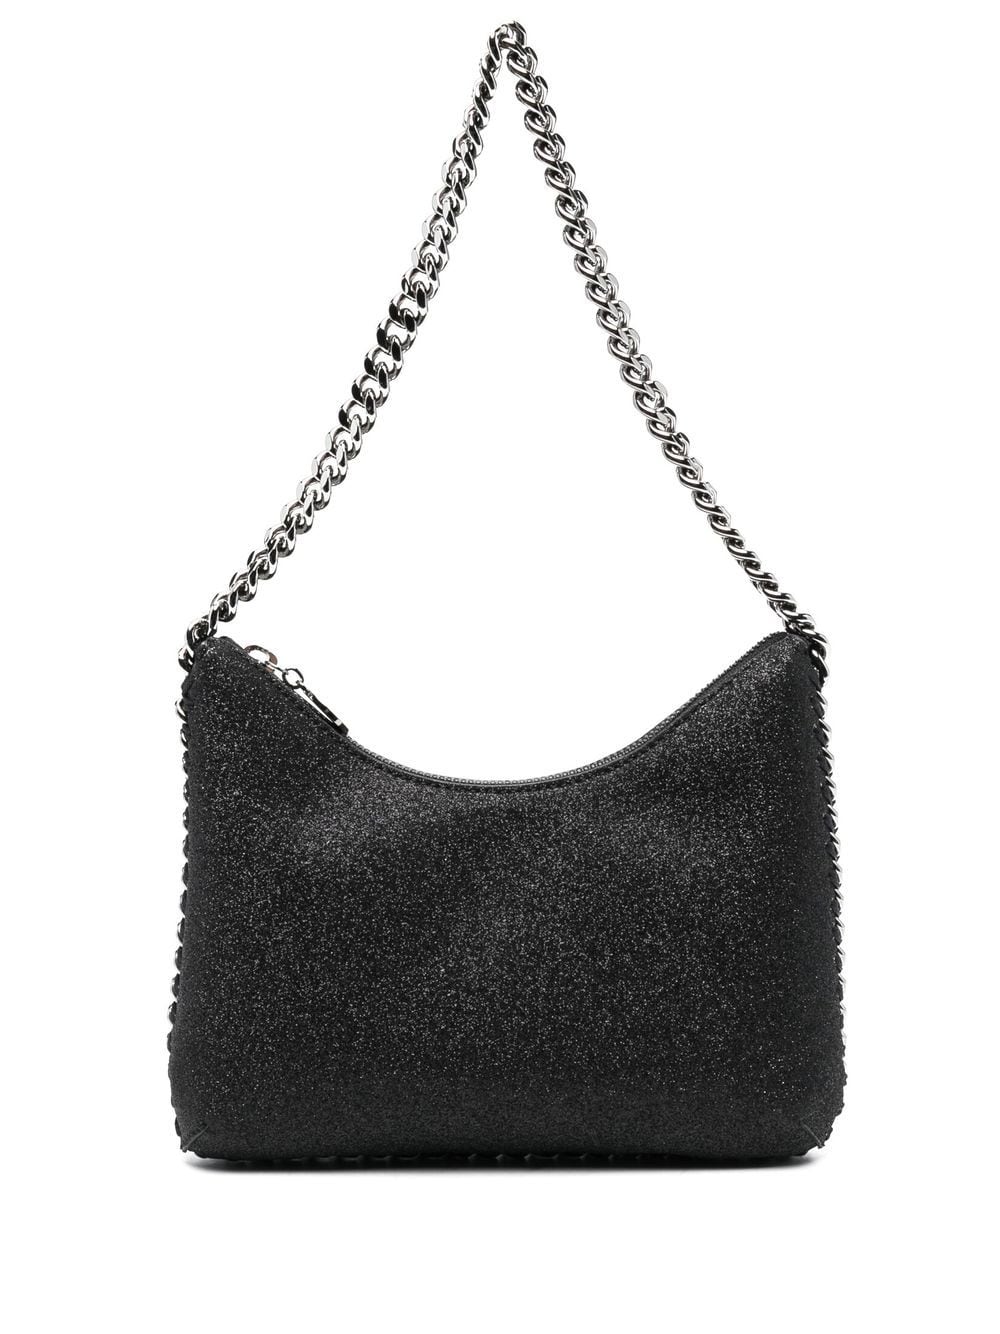 Stella McCartney chain-link detail shoulder bag - Black